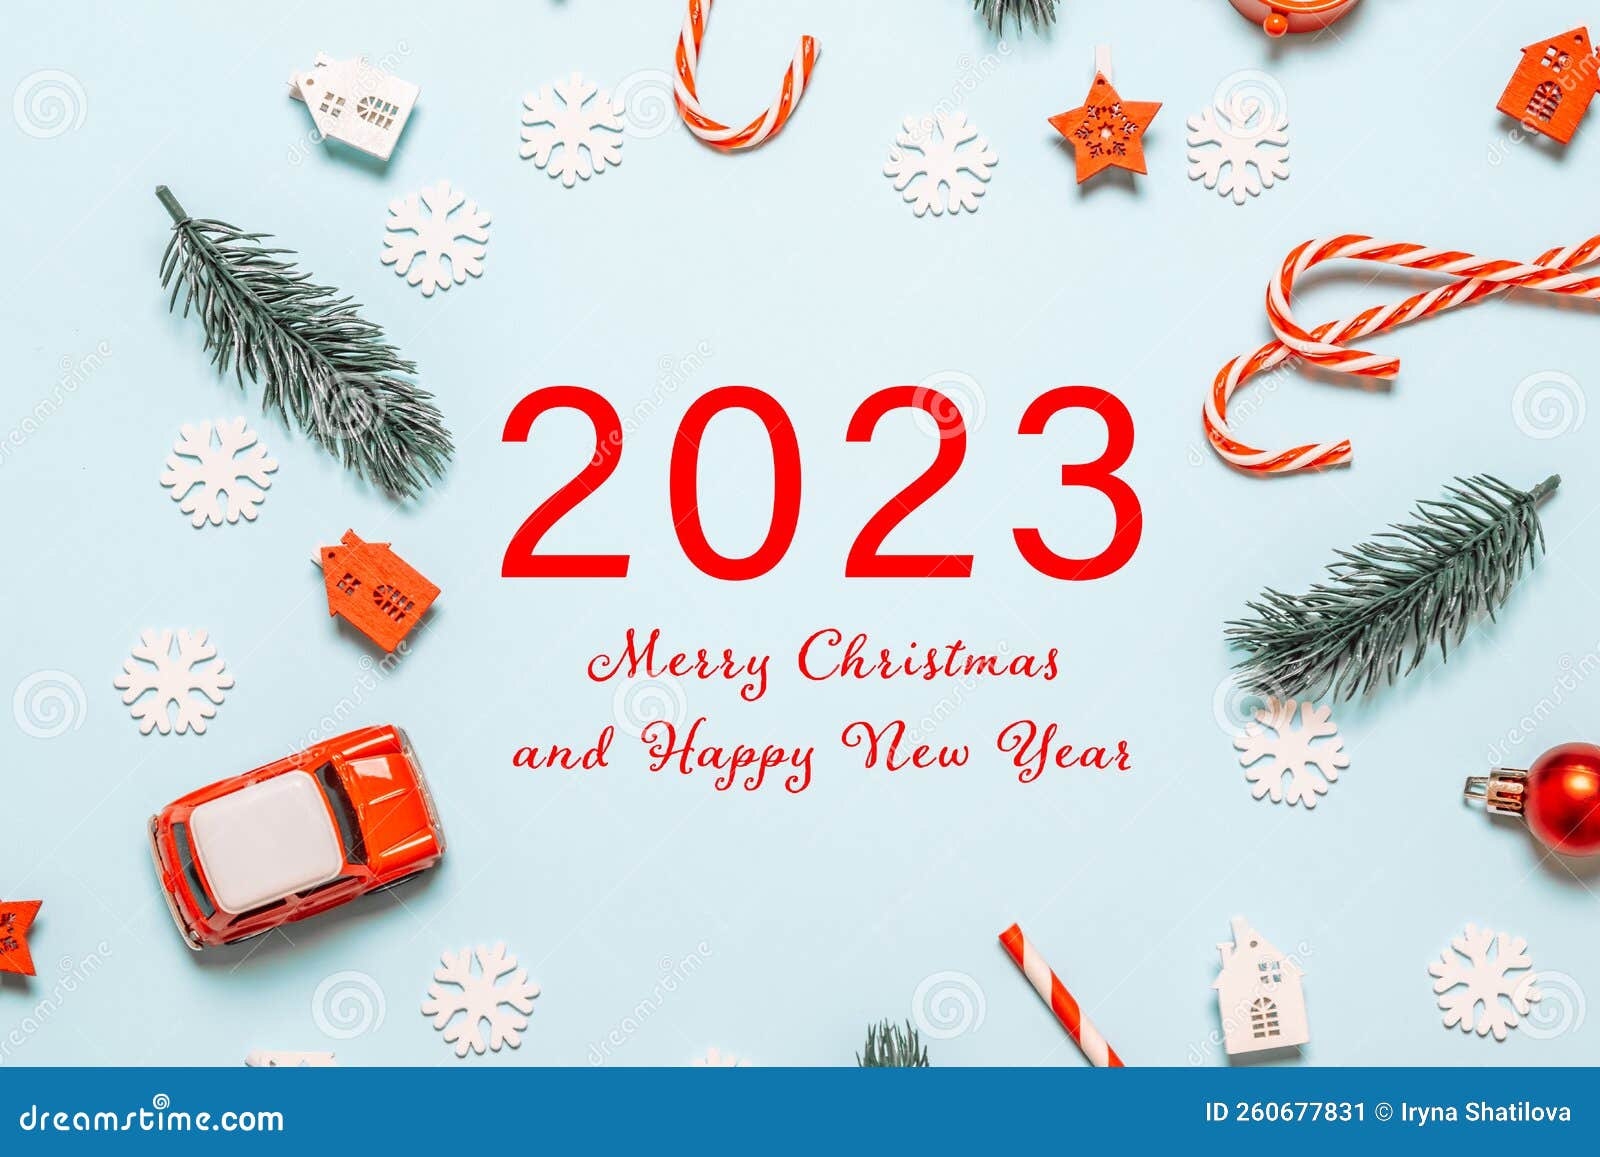 Chào mừng năm mới 2024 với hình ảnh đầy sắc màu và niềm vui tràn đầy. Hãy cùng đón nhận năm mới đầy thách thức và cơ hội mới để trải nghiệm những điều thú vị trong cuộc sống. Hãy cùng xem hình ảnh để nạp đầy năng lượng cho một năm mới đầy hứa hẹn nhé!